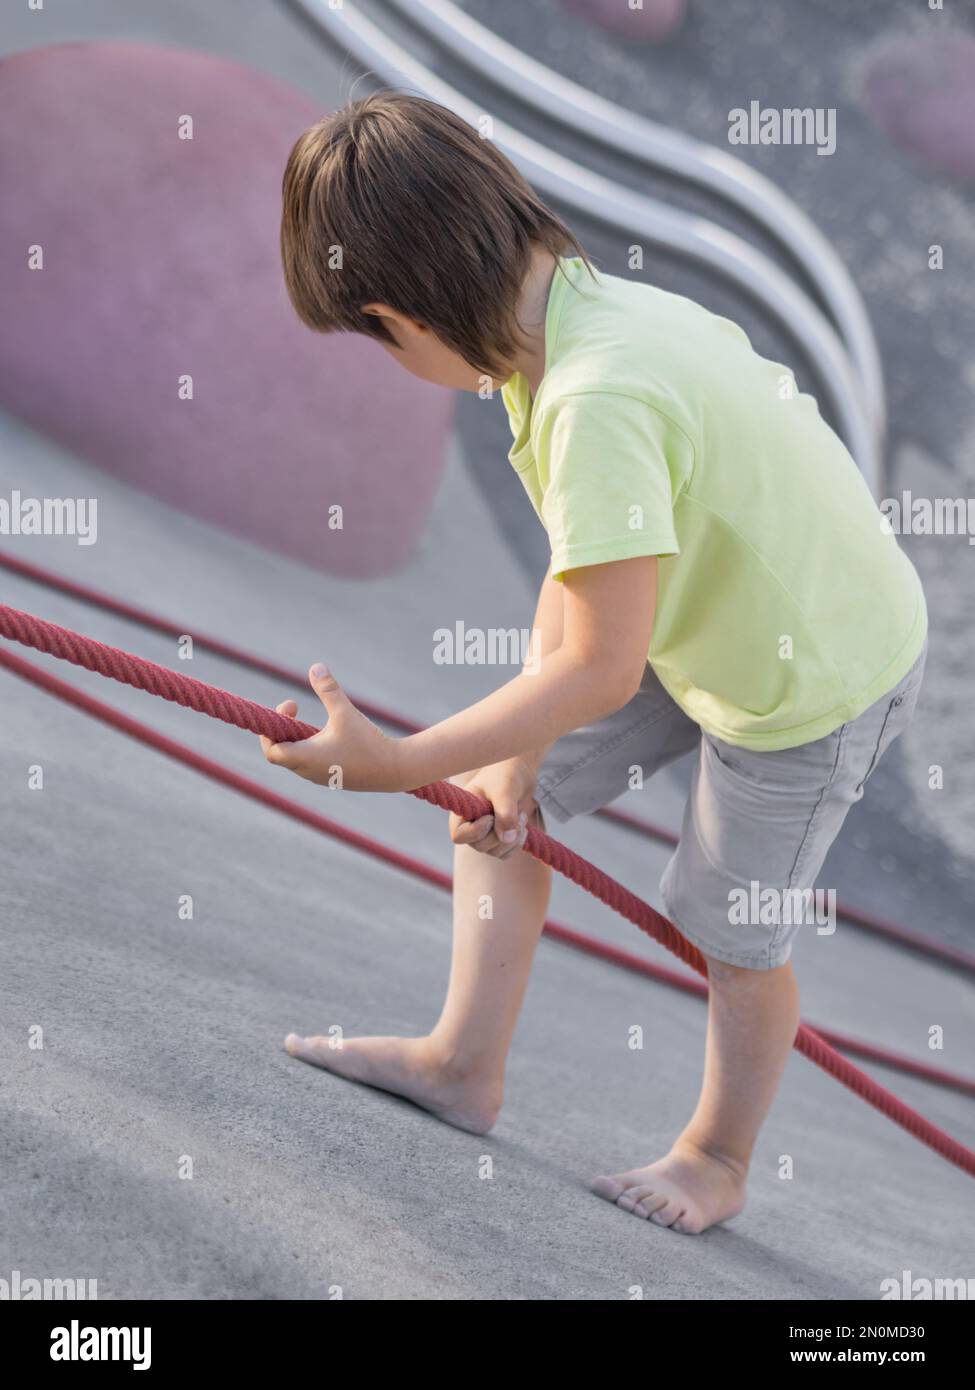 Der Junge klettert einen Betonhang auf dem modernen Kindersport- und Spielplatz hinauf. Das Kind überwindet die Angst und lernt neue Dinge. Aktive Freizeitaktivitäten im Freien. Stockfoto